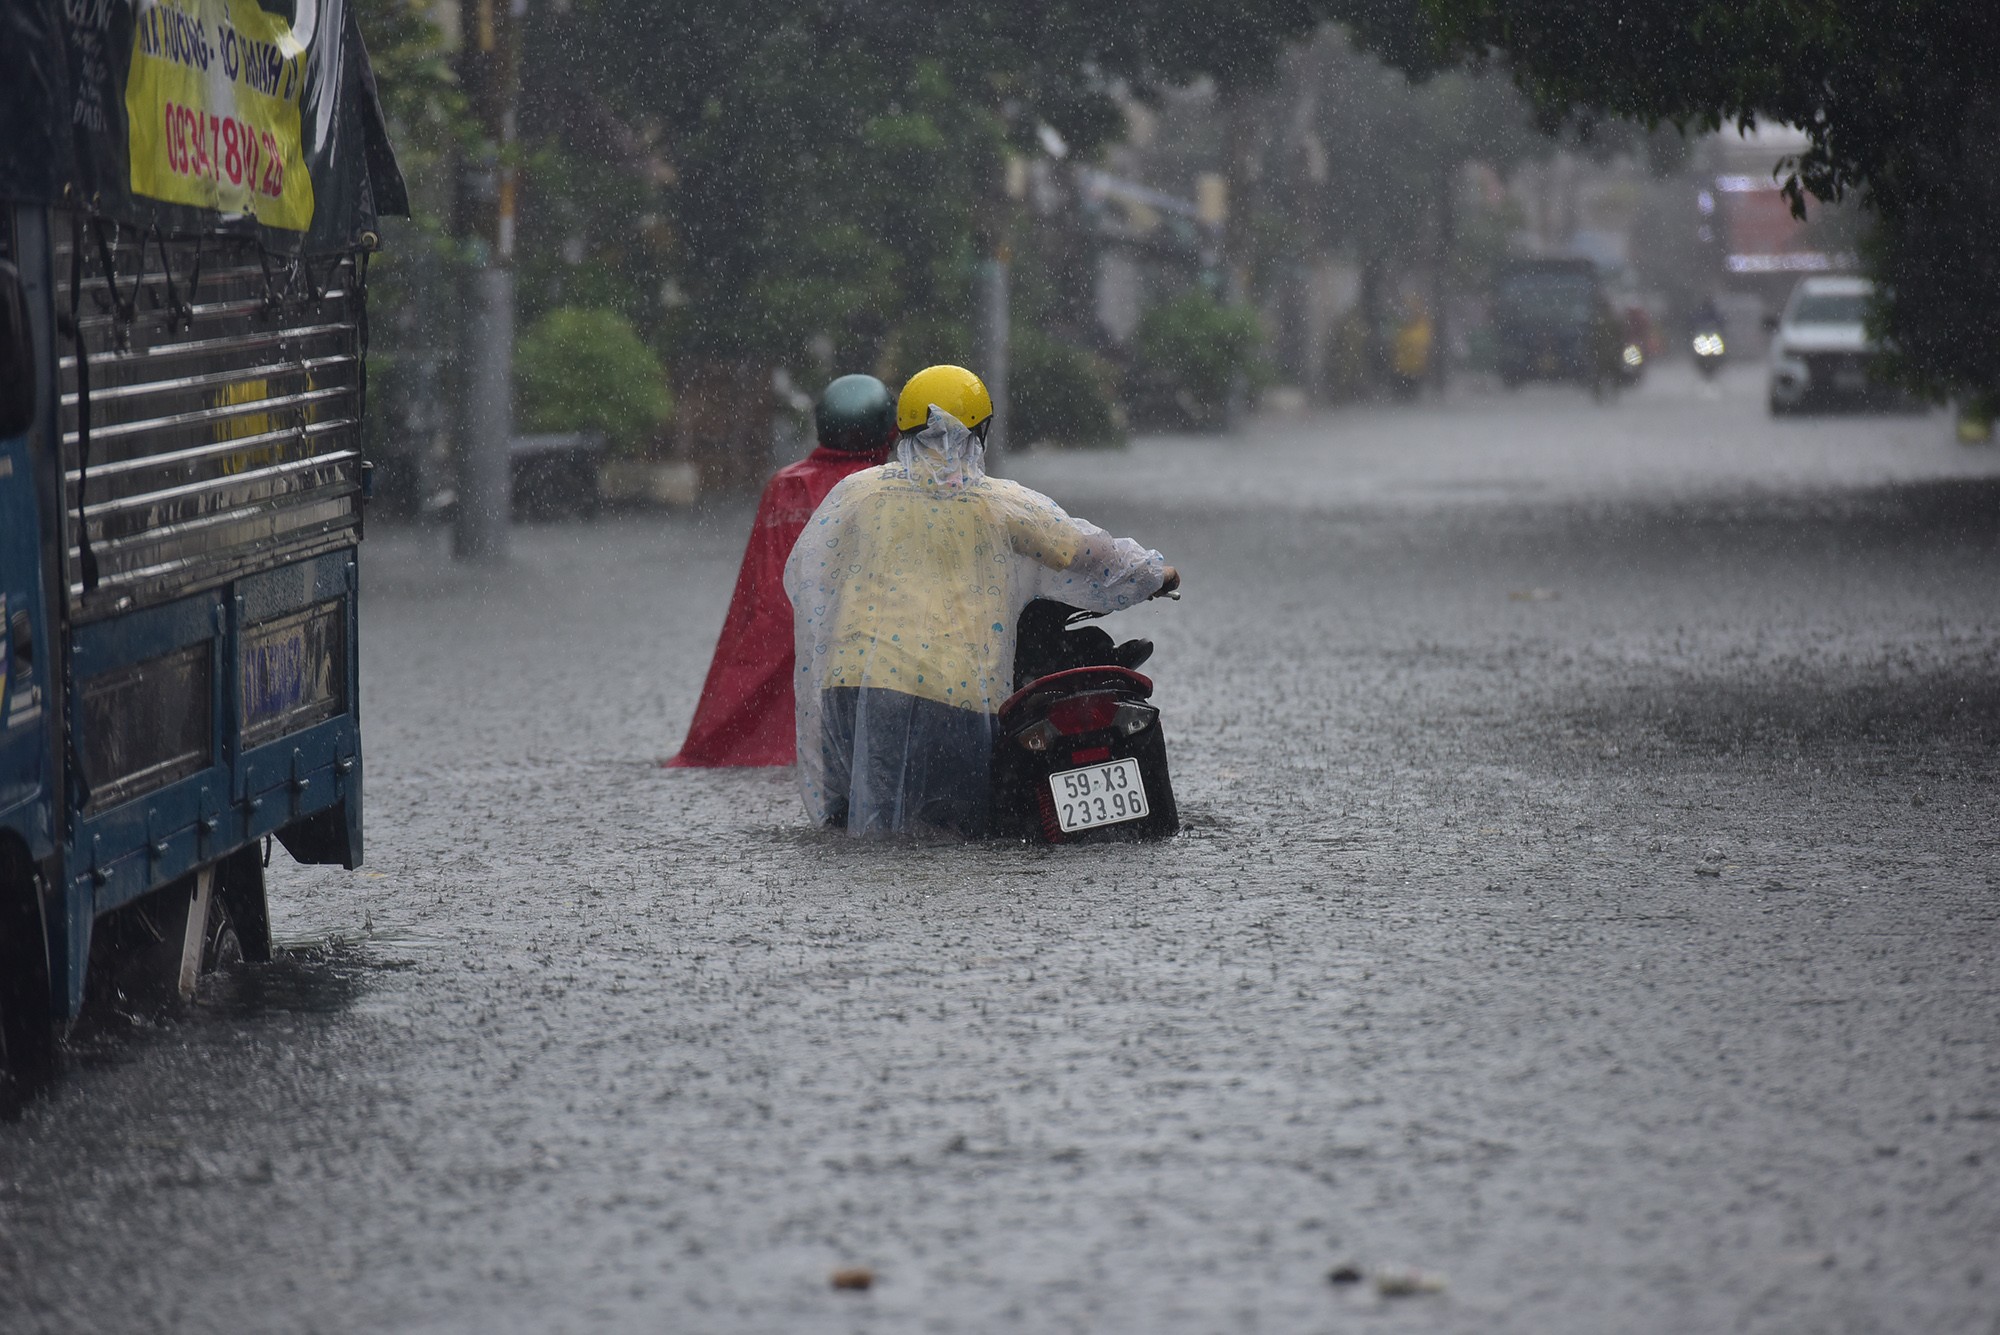 Đường ở TP.HCM ngập sâu trong mưa lớn, nhiều người ngã nhào - 8